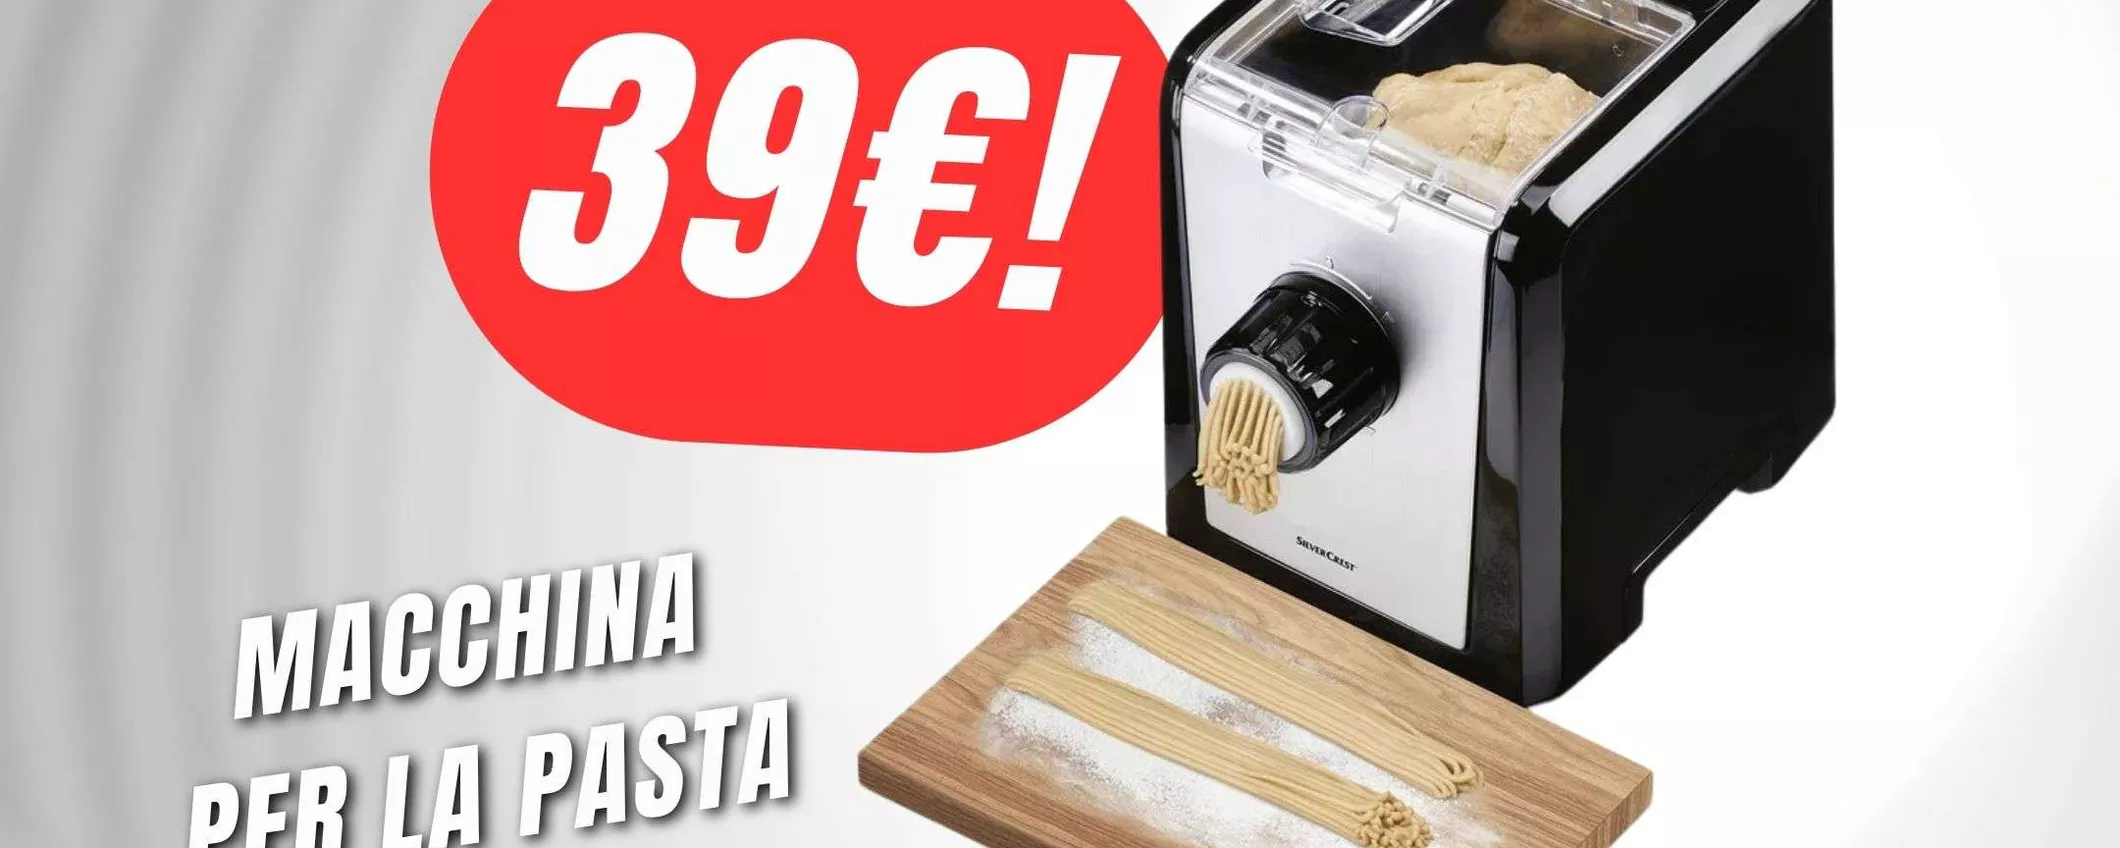 PREZZO FOLLE per la Macchina per la Pasta ELETTRICA (39€!)